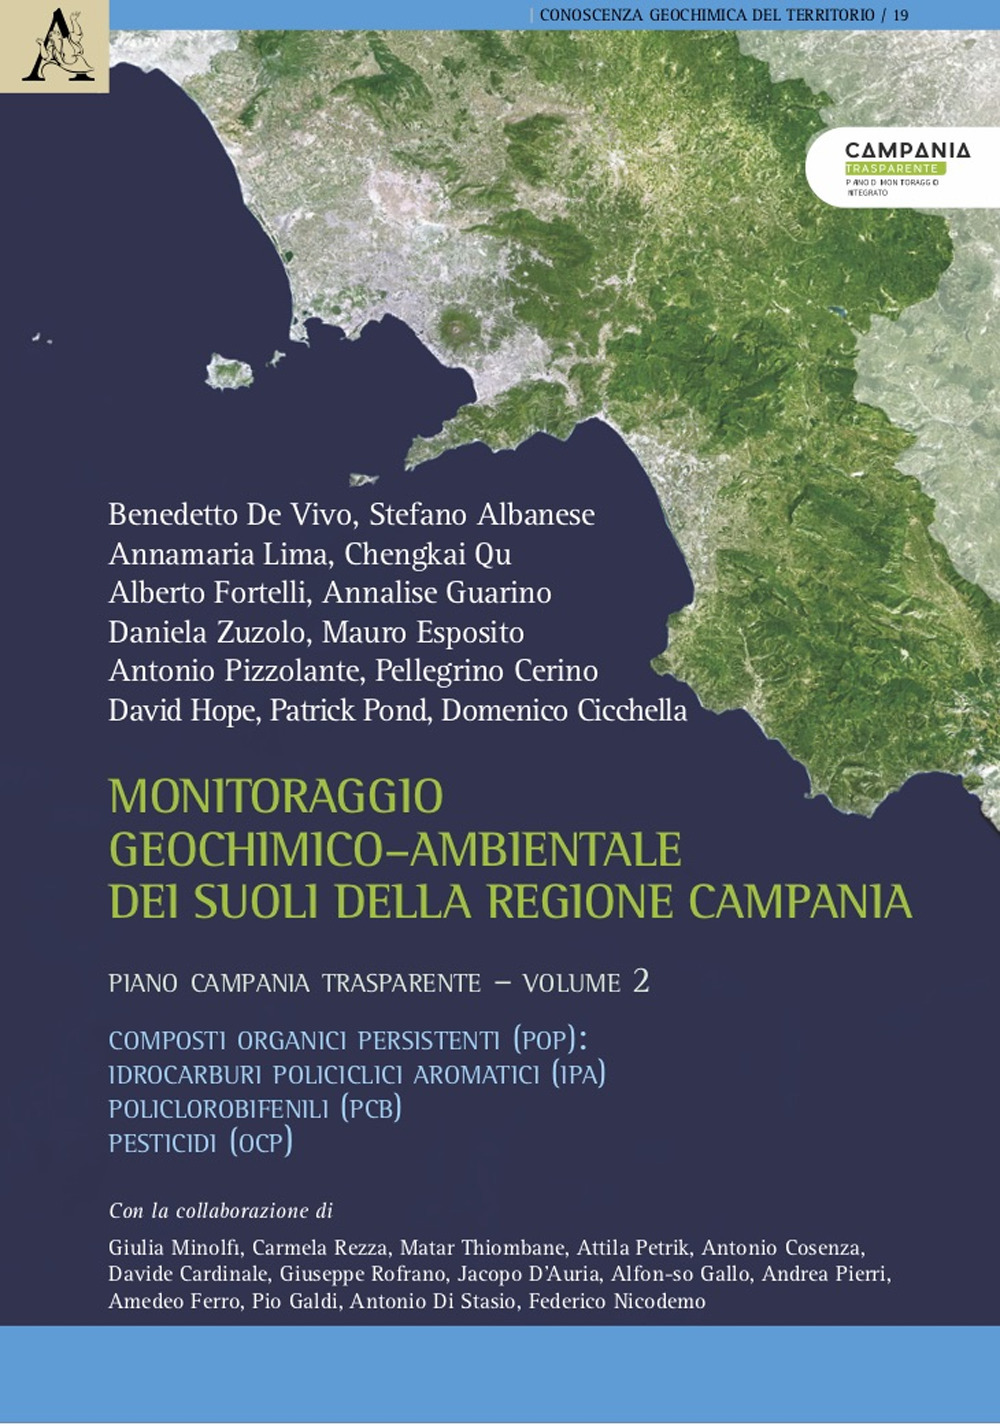 Monitoraggio geochimico-ambientale dei suoli della Regione Campania. Piano Campania trasparente. Vol. 2